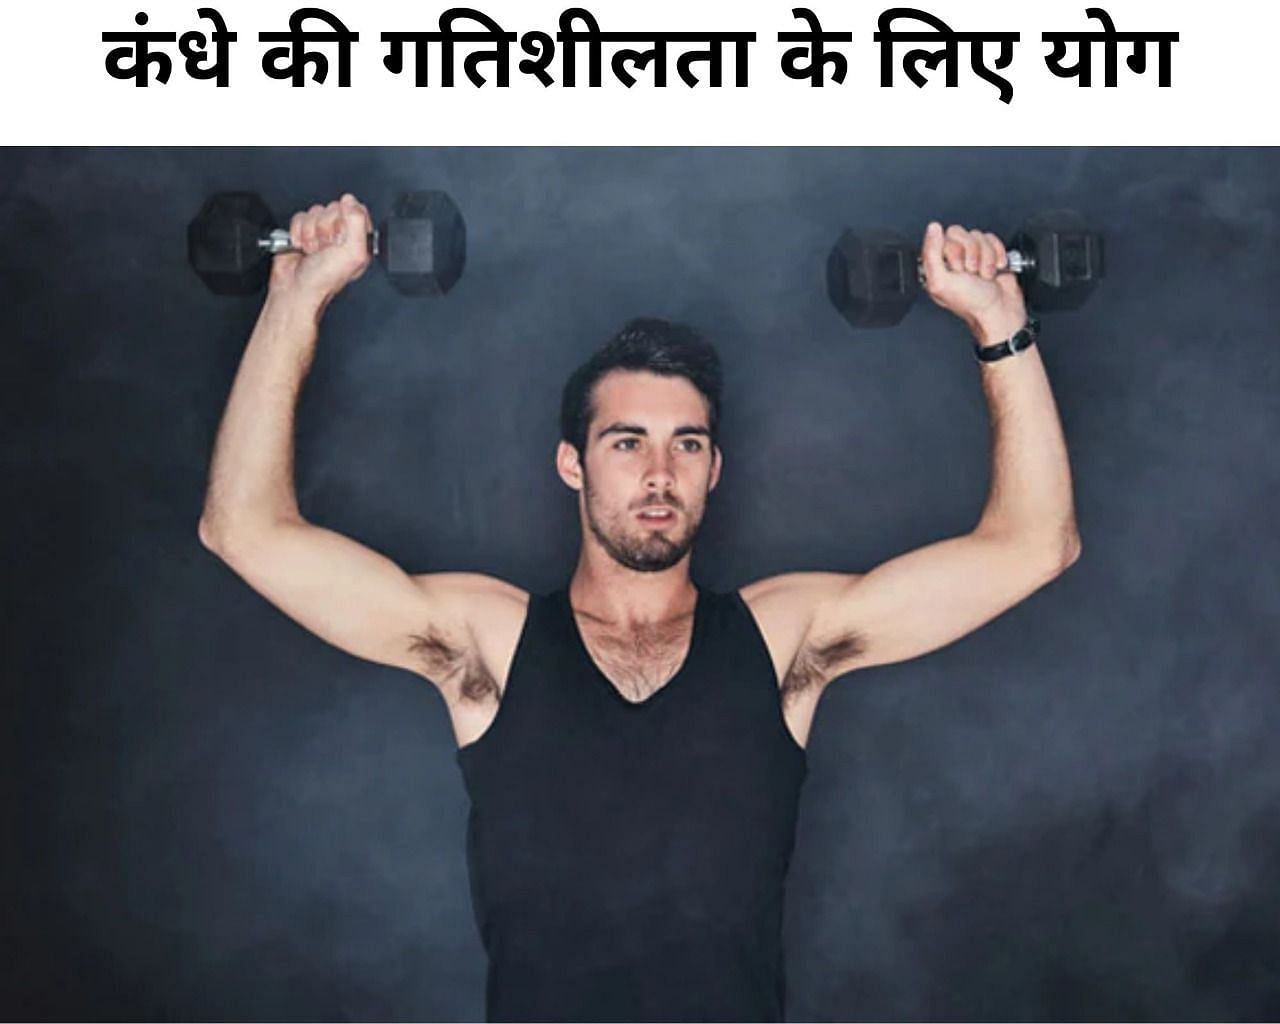 कंधे की गतिशीलता के लिए योग (फोटो - sportskeeda hindi)